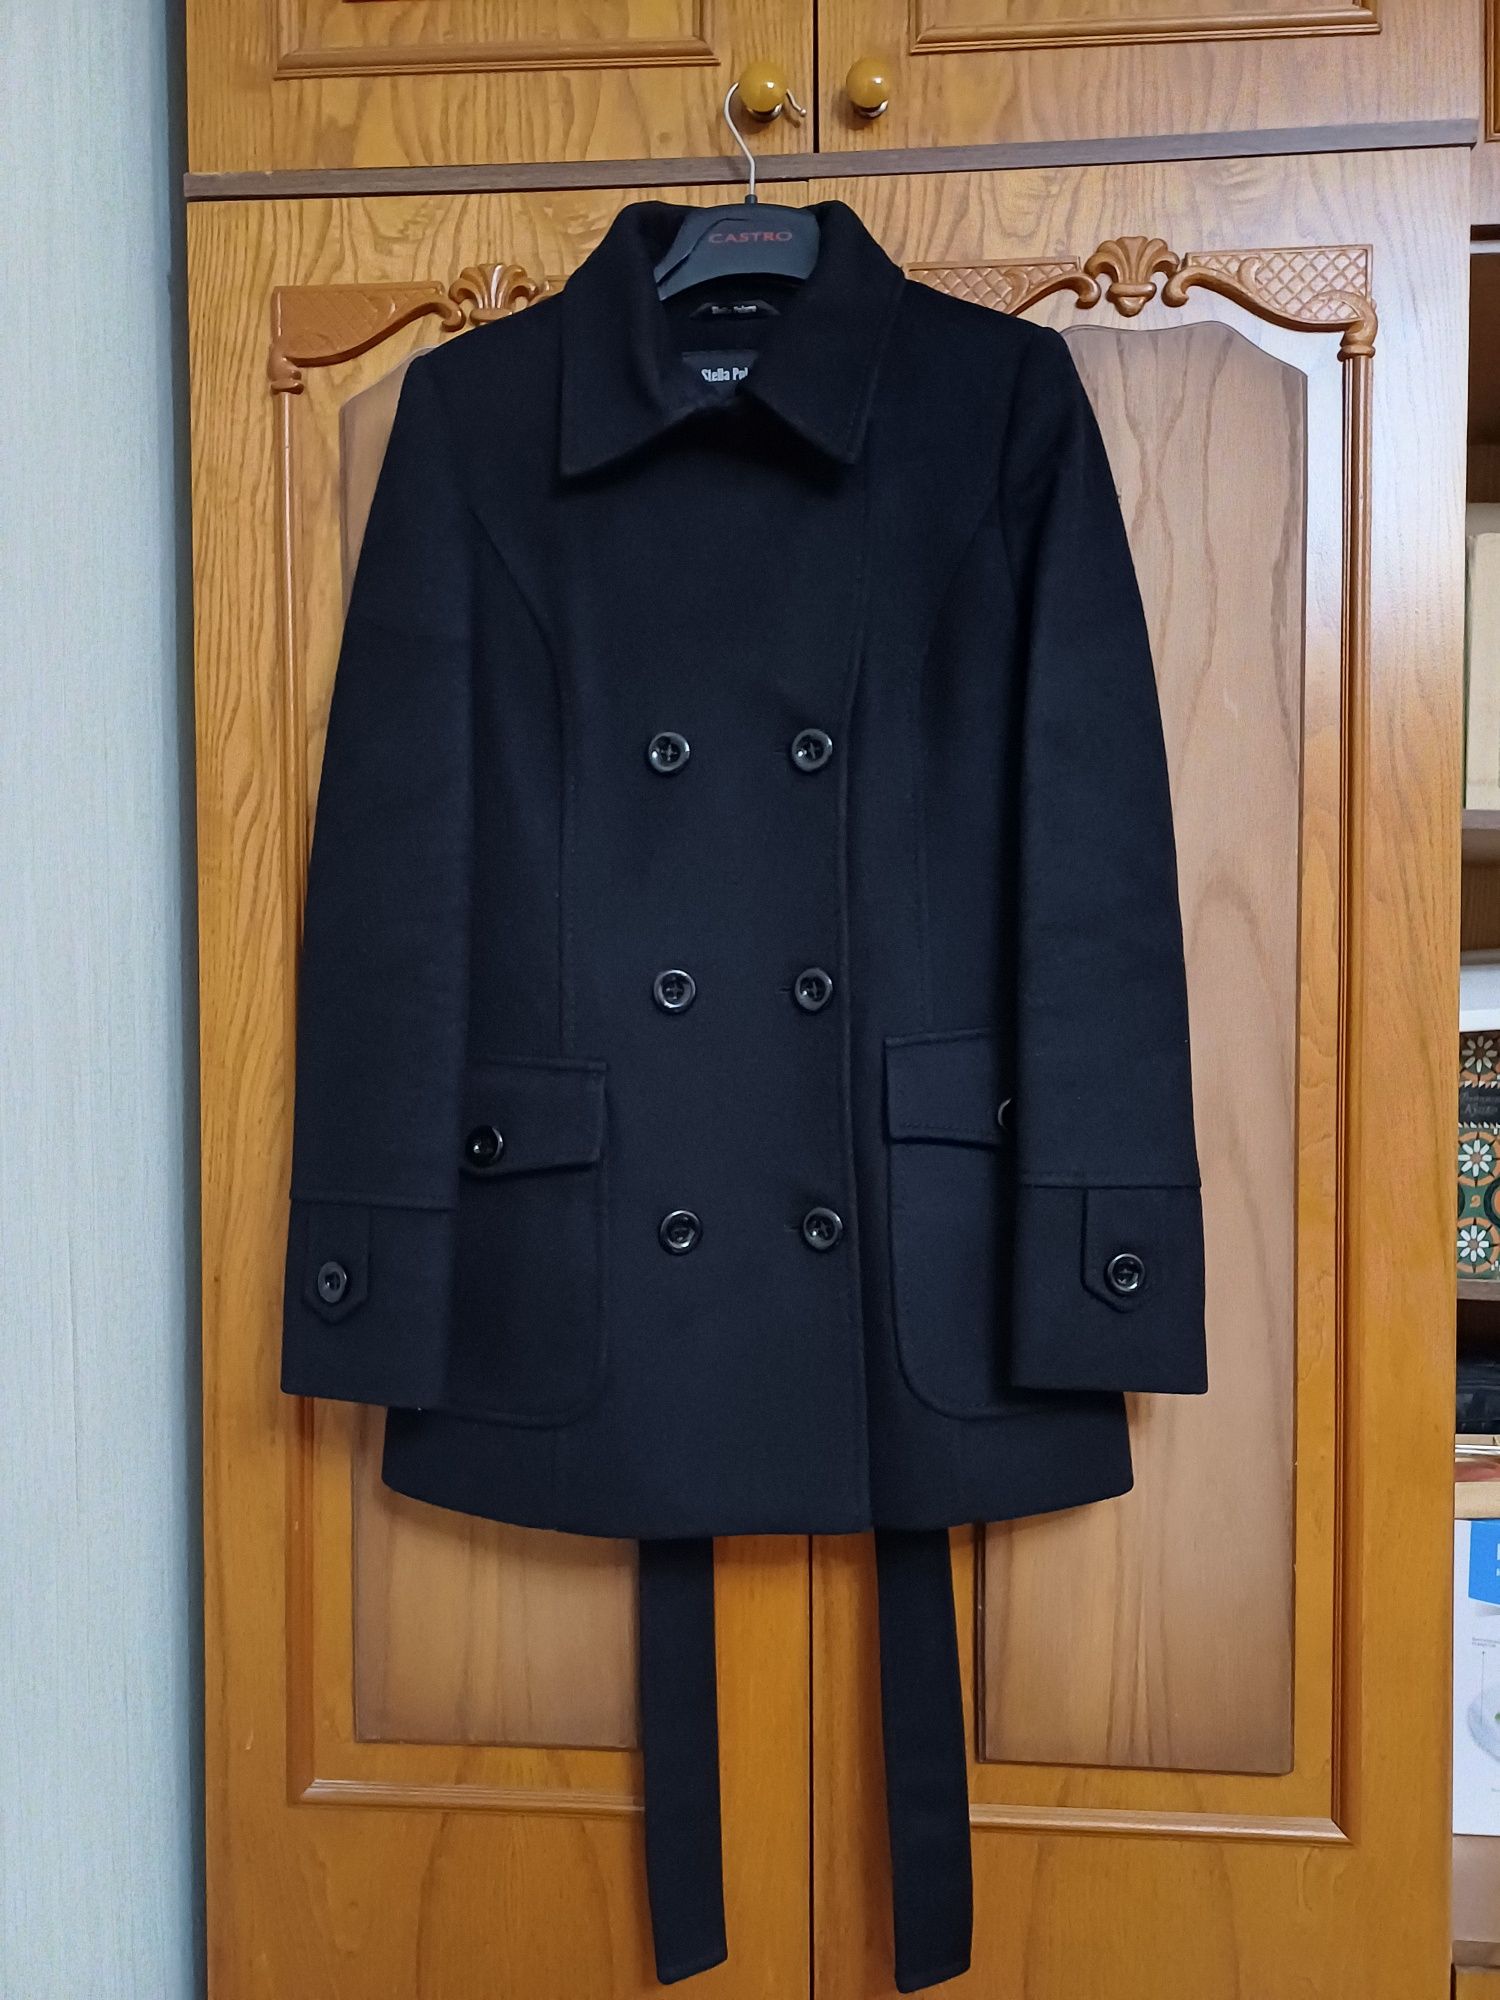 Жіноче стильне кашемірове пальто